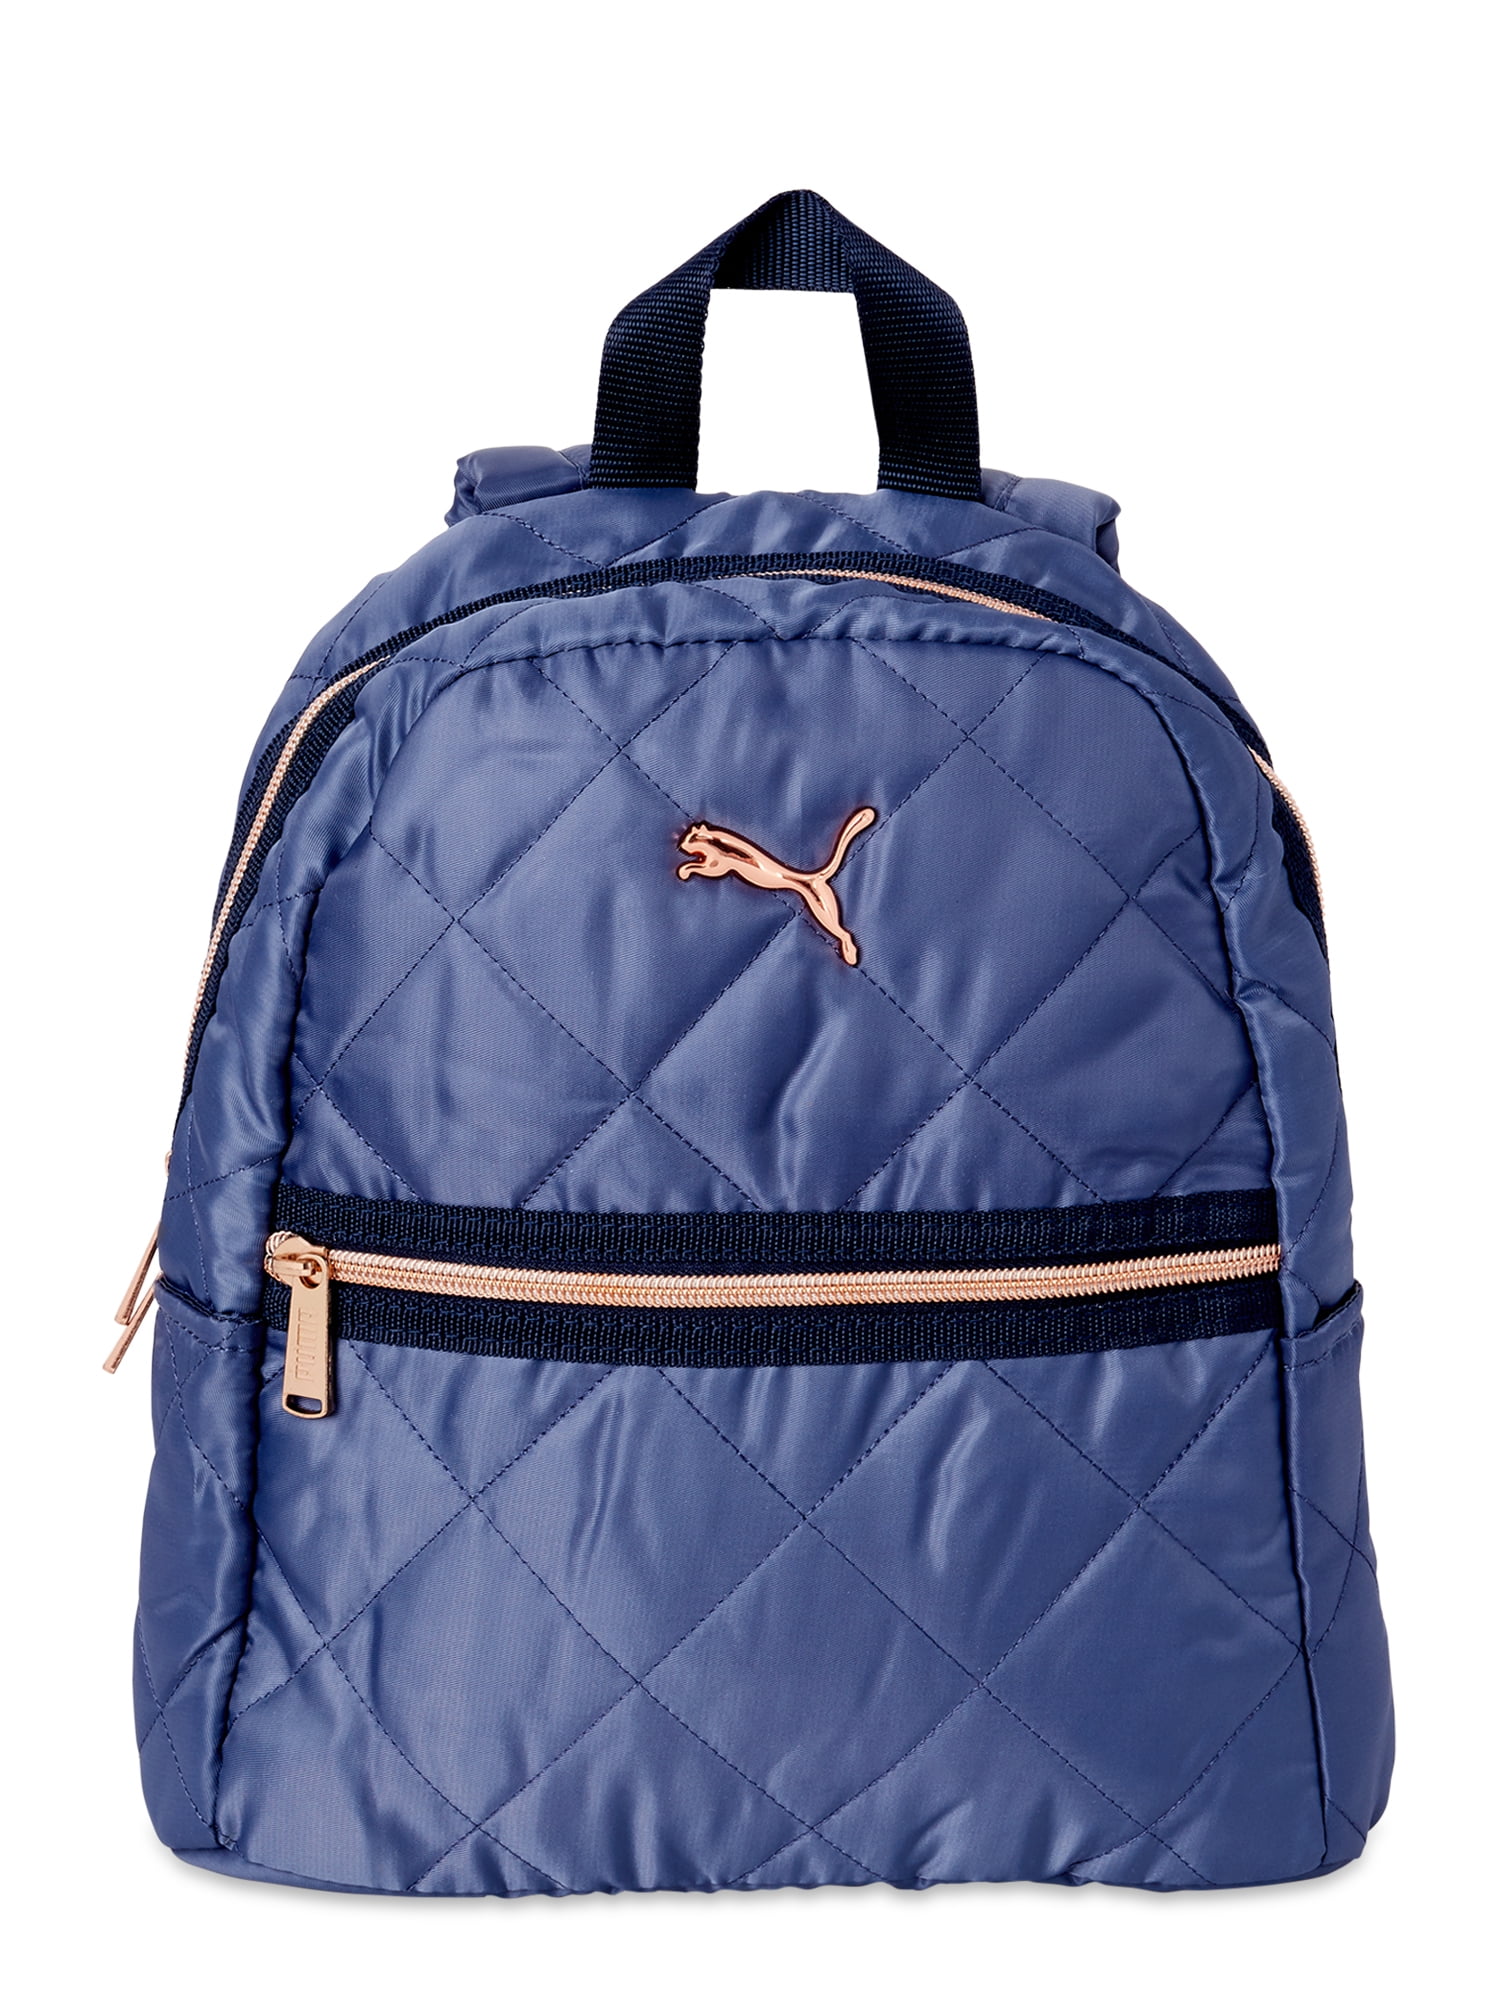 puma backpack walmart